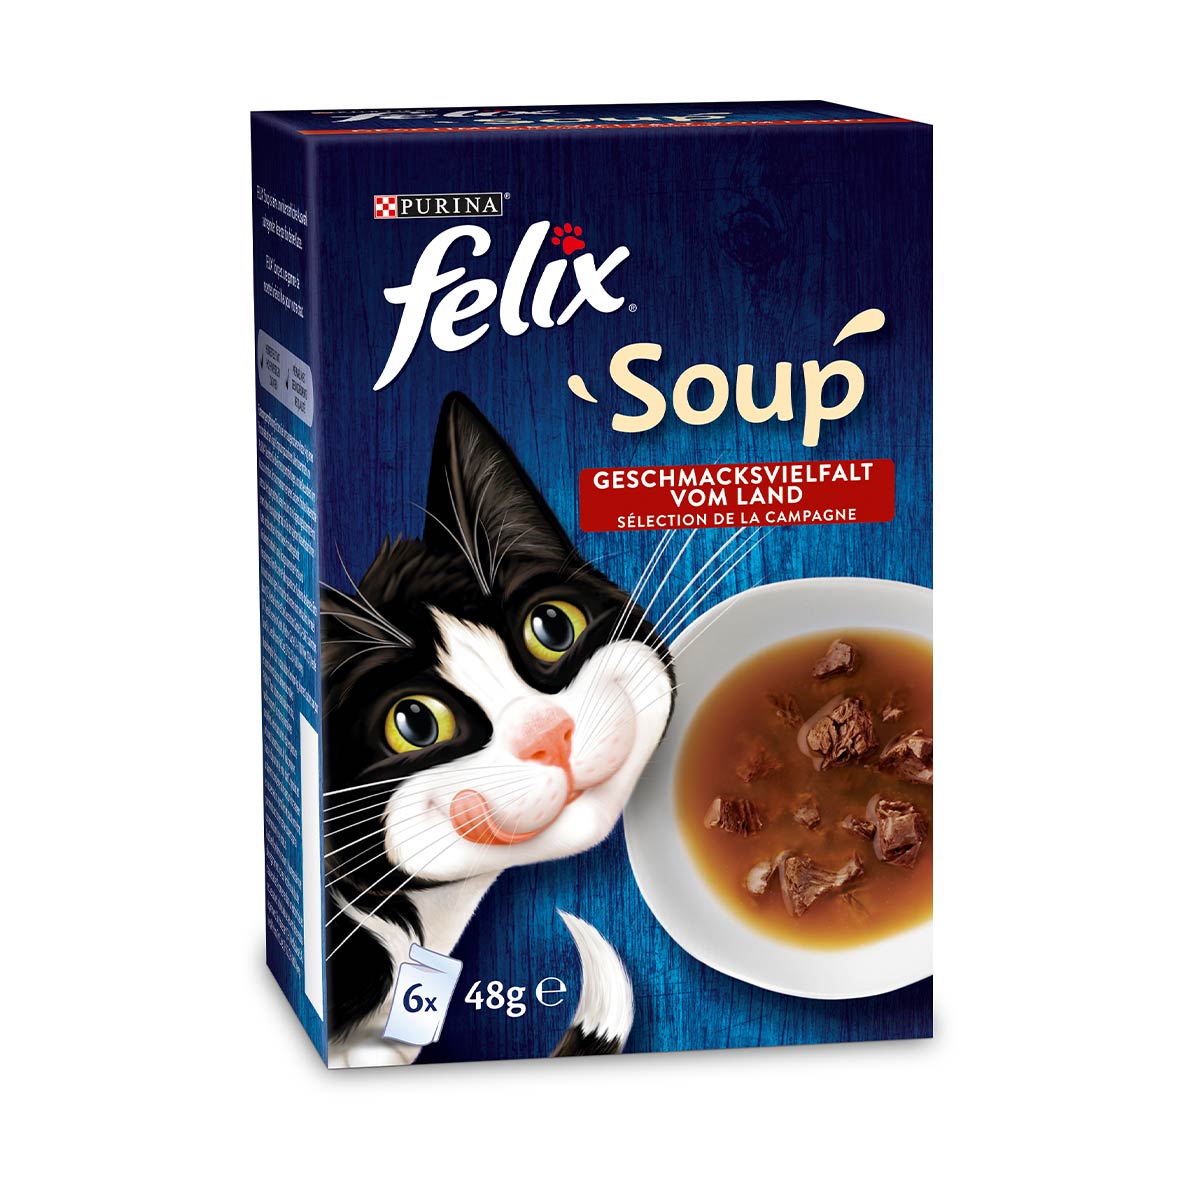 FELIX Soup výběr z venkova s hovězím, kuřecím a jehněčím masem